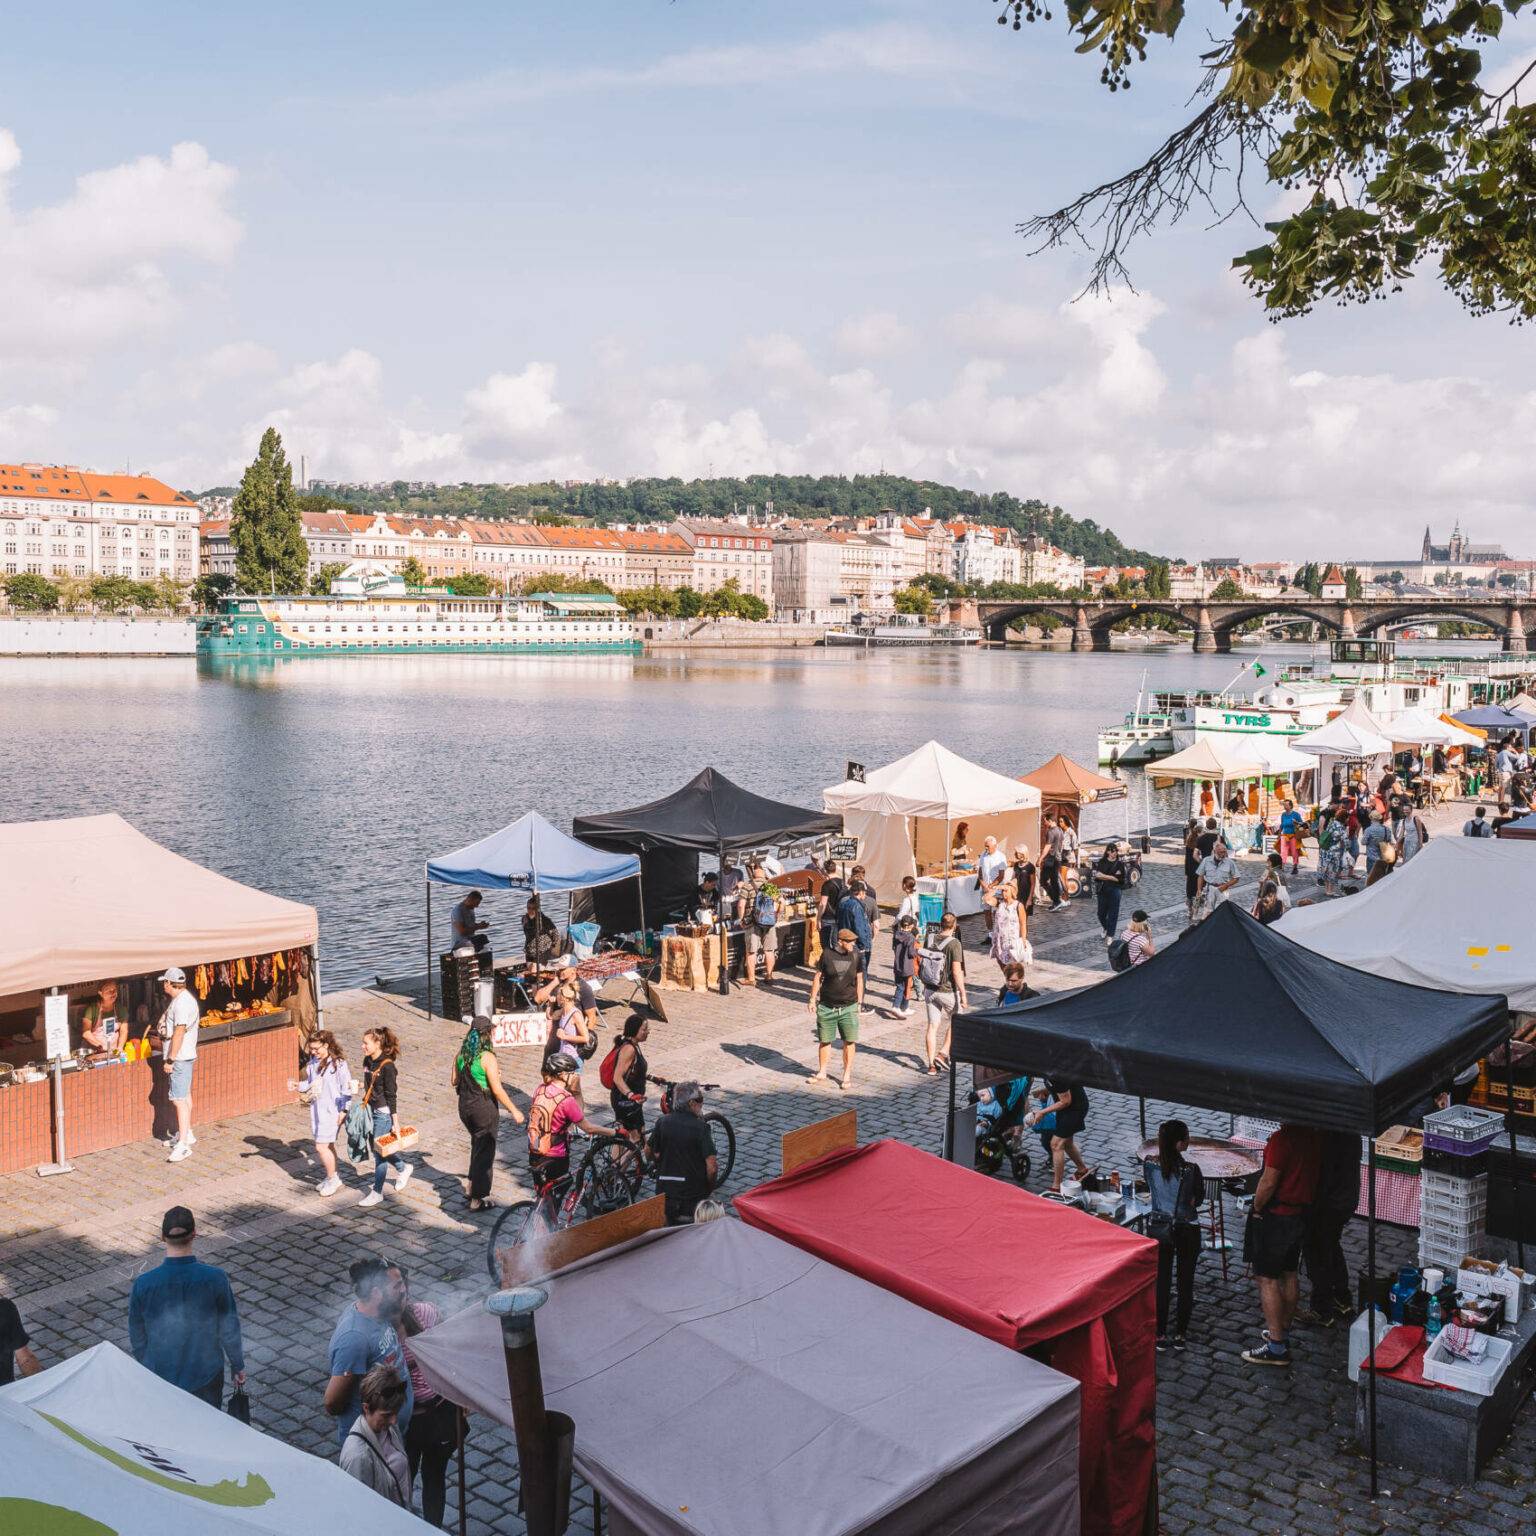 Viele bunte Stände am Ufer der Moldau bilden den Saturday Farmers Market in Prag.